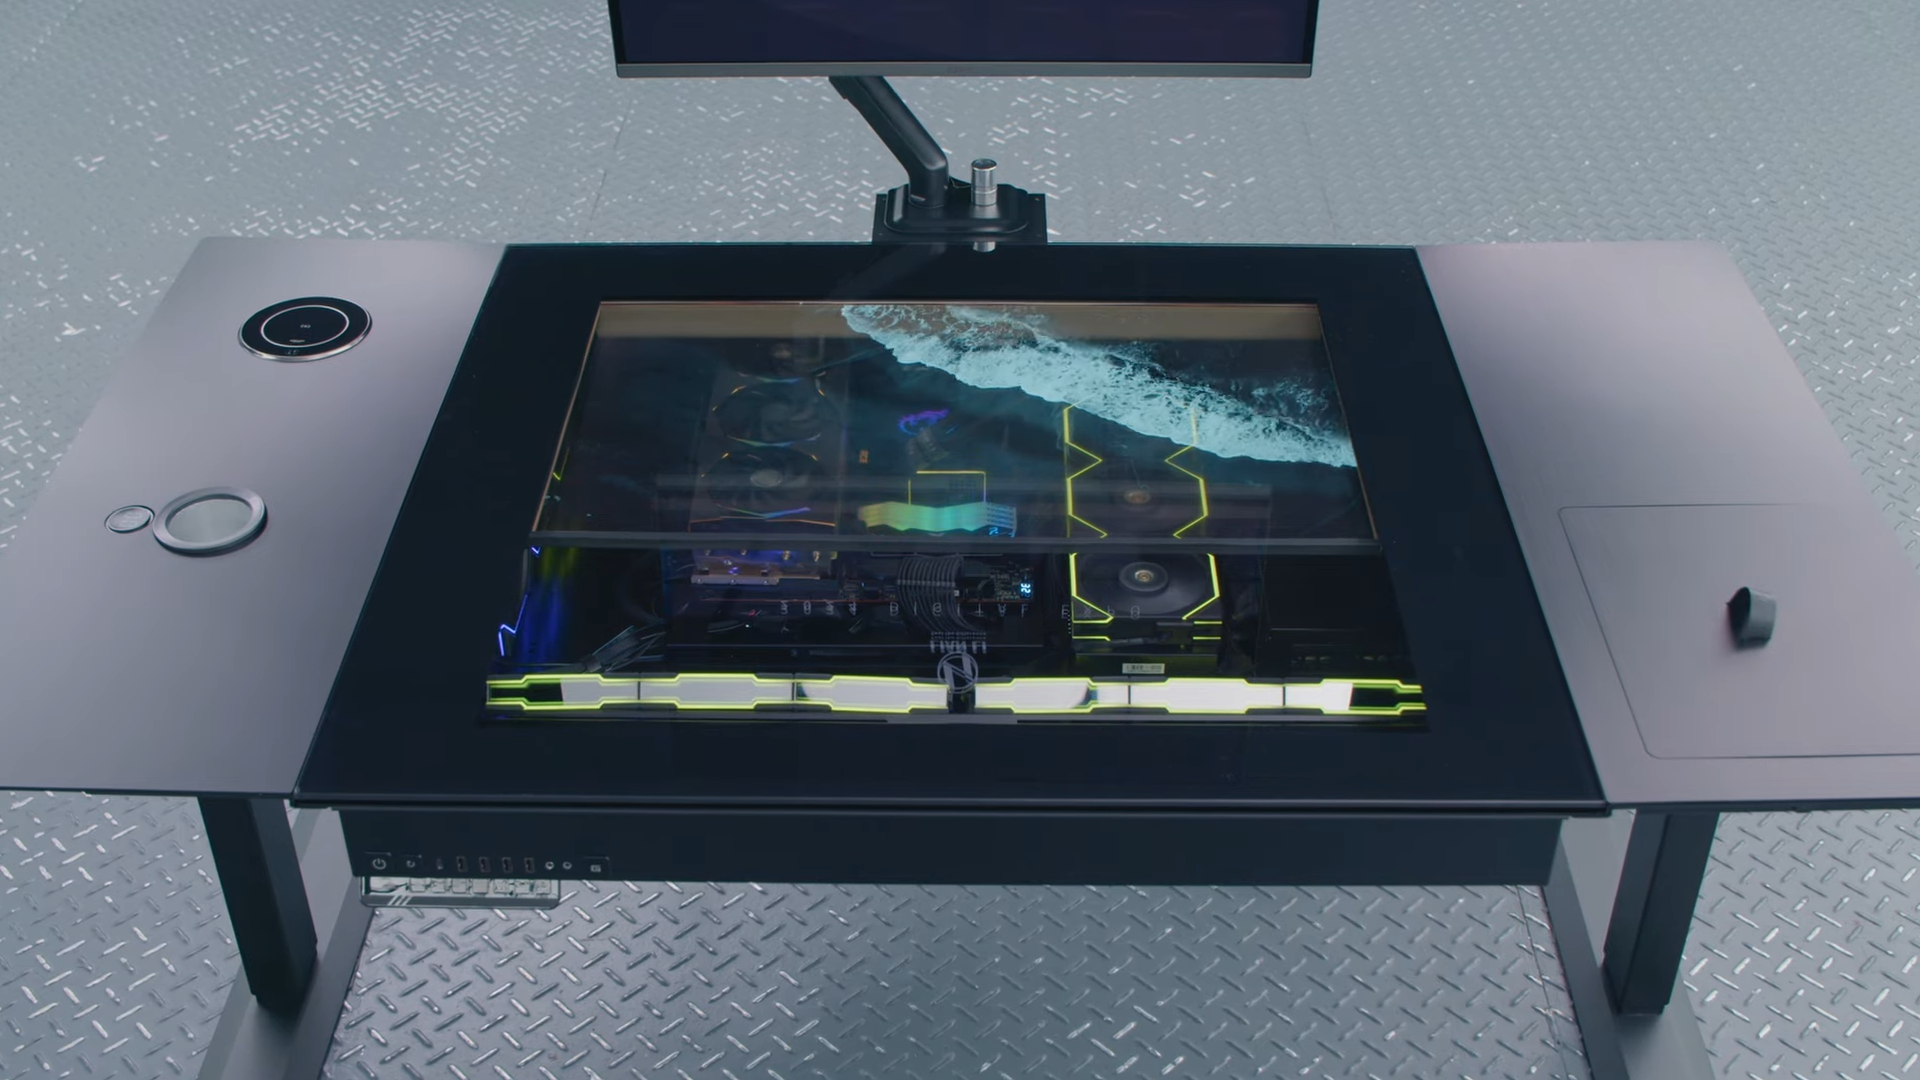 Lian Li har lanserat DK-07 - det ursprungliga PC-fodralet med en integrerad transparent OLED-skärm